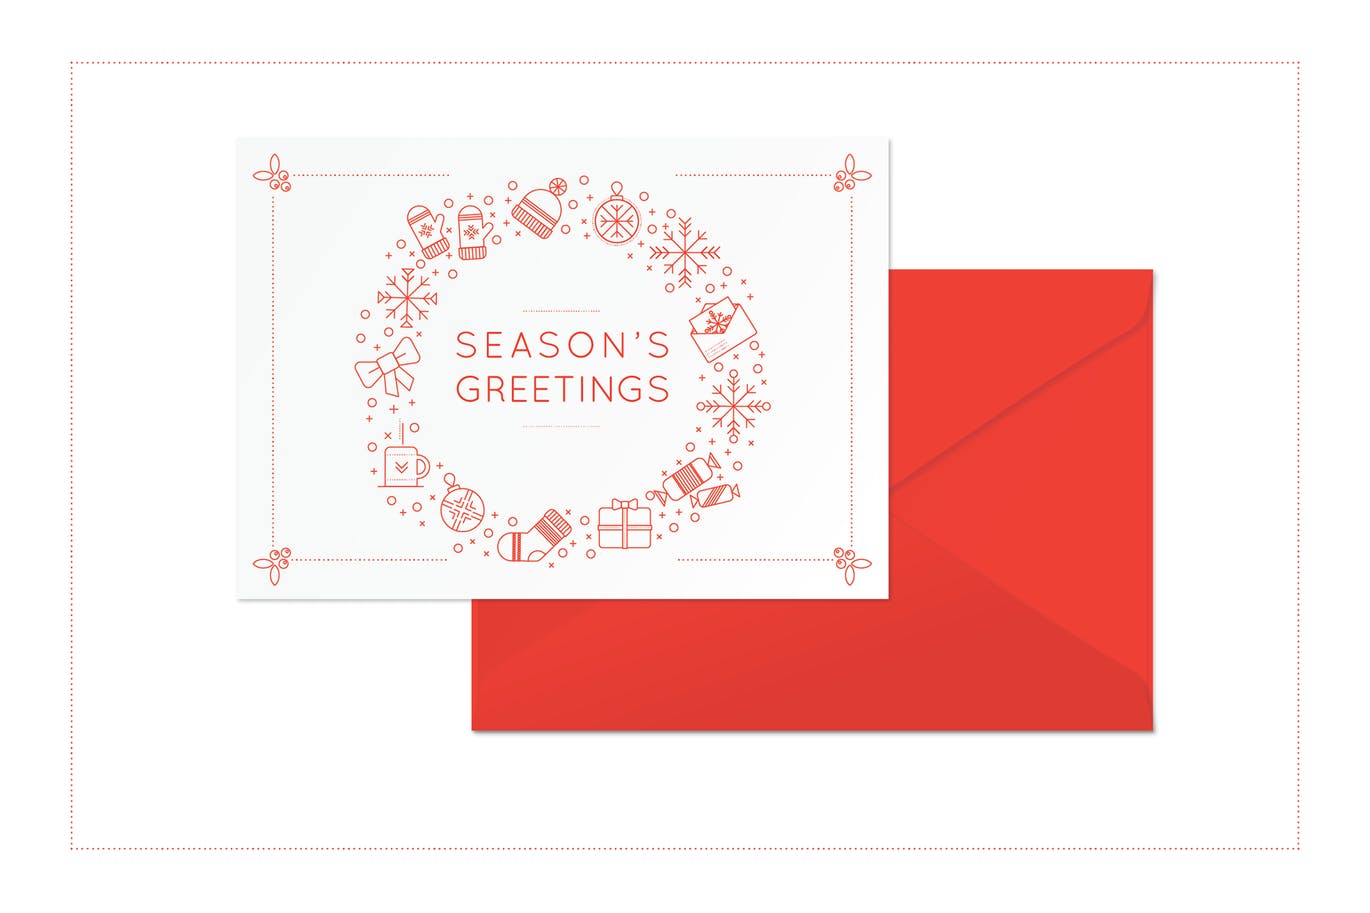 3款极简设计风格圣诞节贺卡设计模板 Merry Christmas Card Templates插图(2)